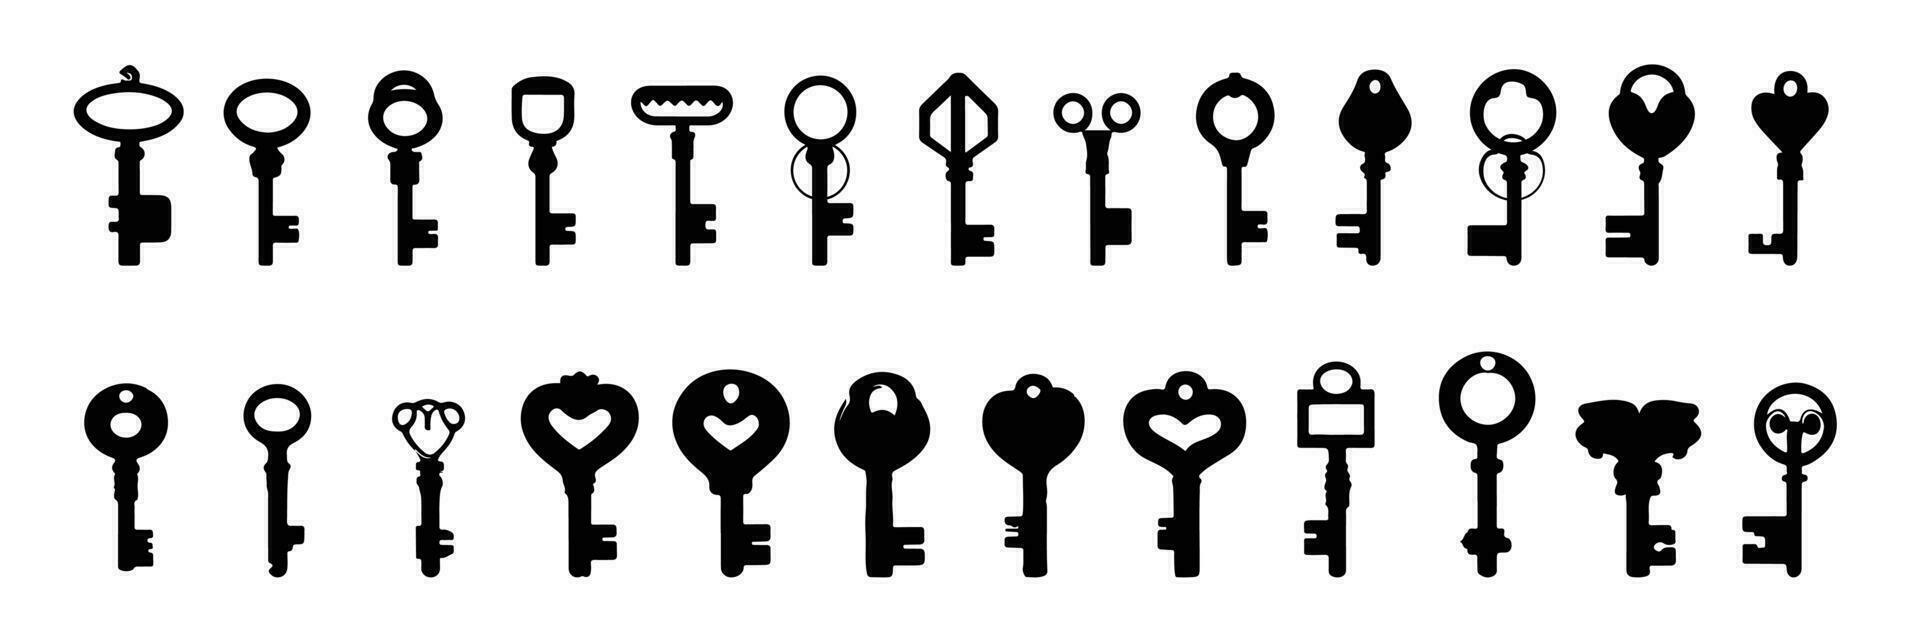 Antique Keys Clip Art, Old Keys Clipart,Vintage Keys Clip Art,Instant  Download, Black Keys Silhouette, Retro Key, Vector keys